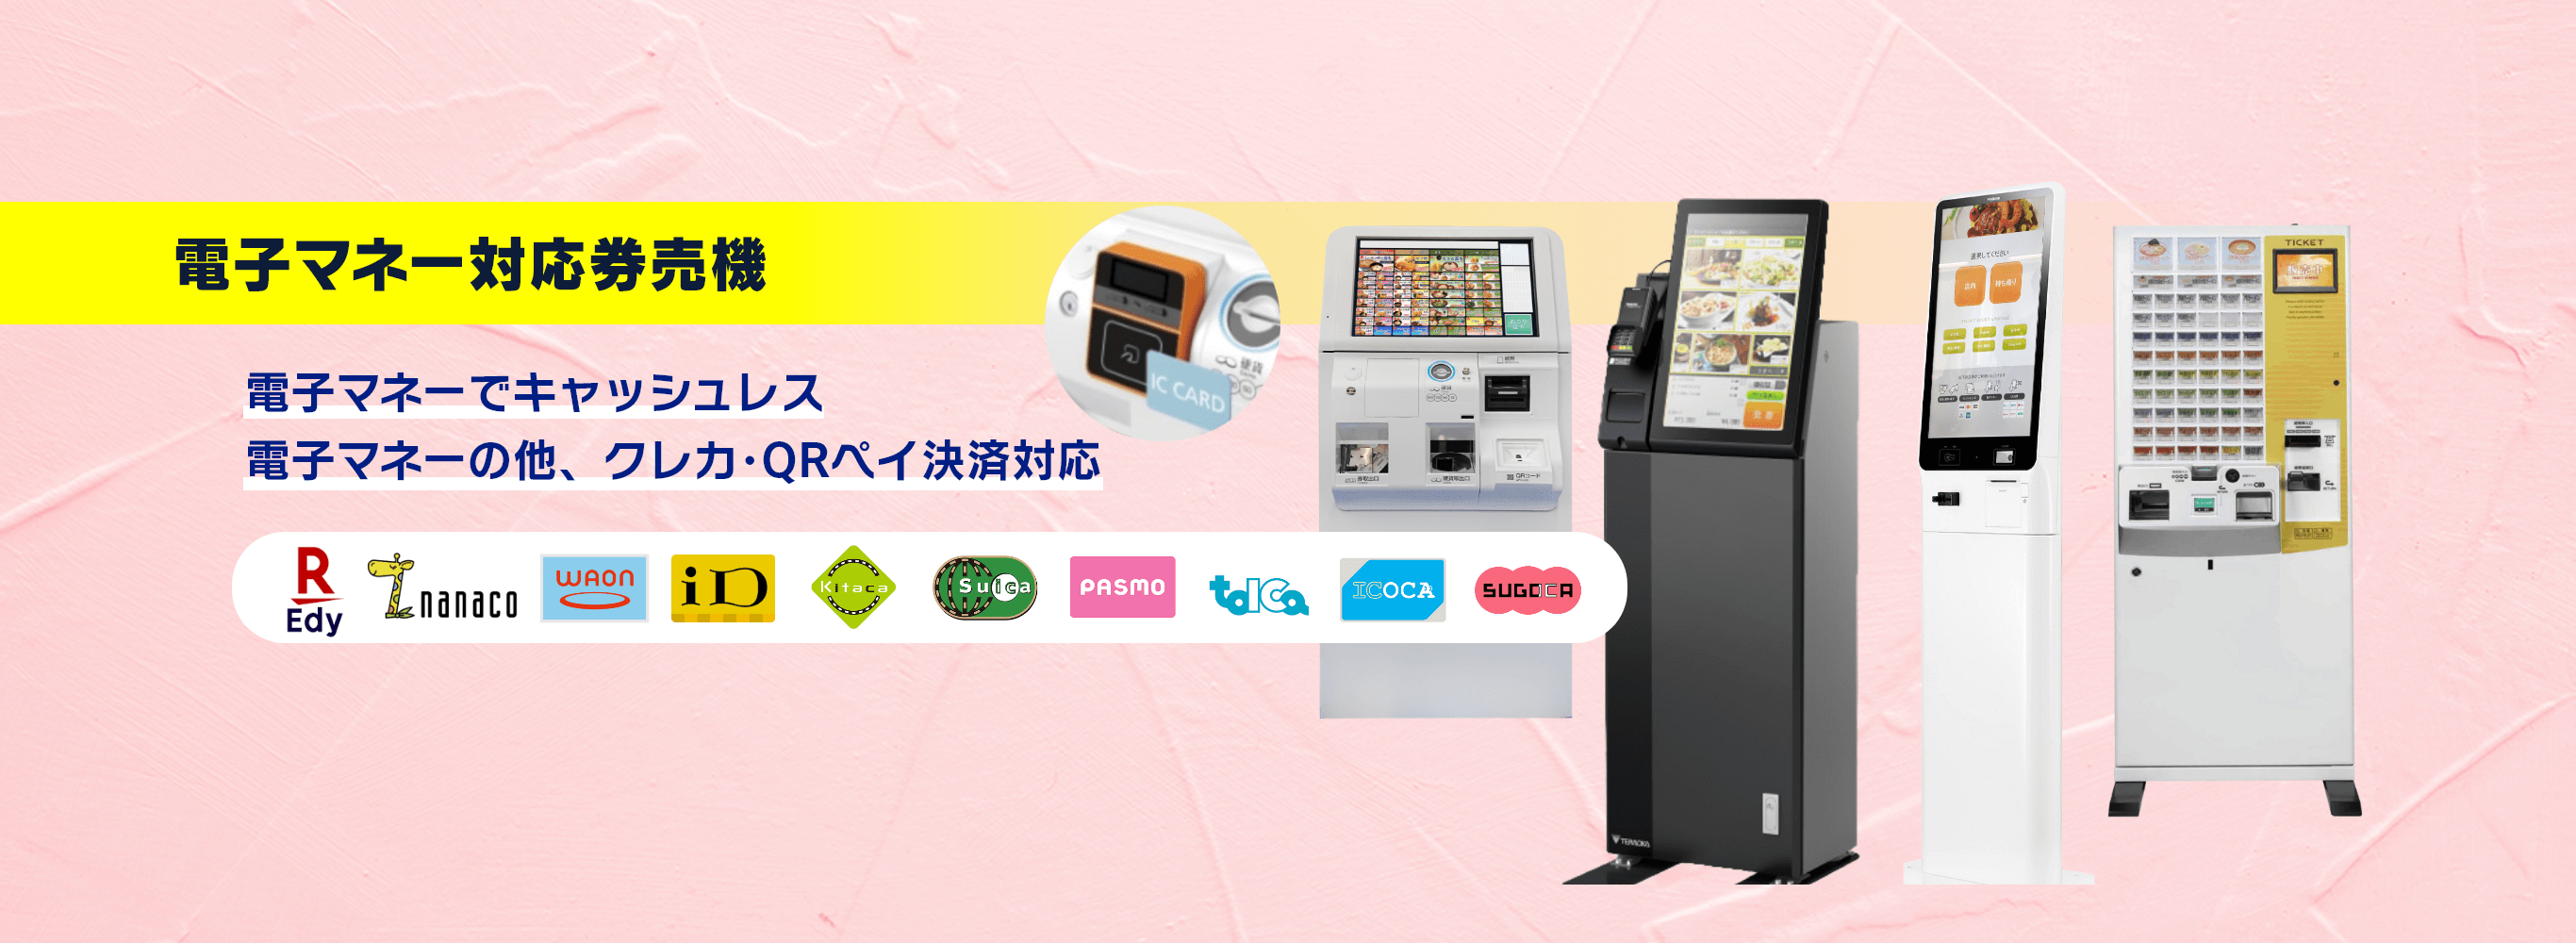 電子マネー対応券売機‐商品別の紹介ビジュアル